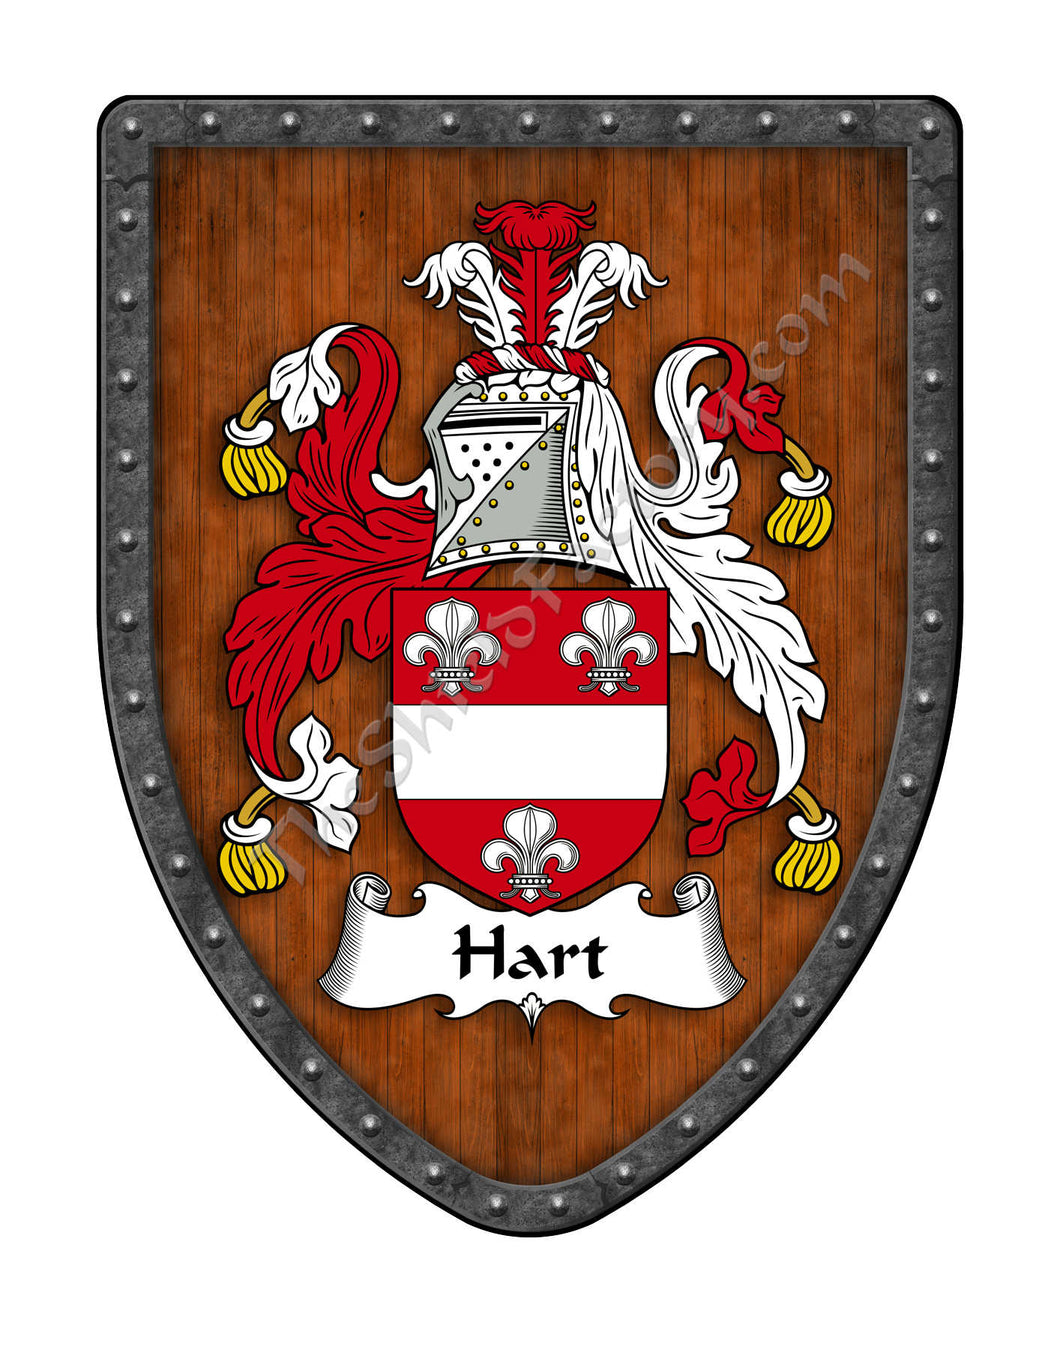 Hart I